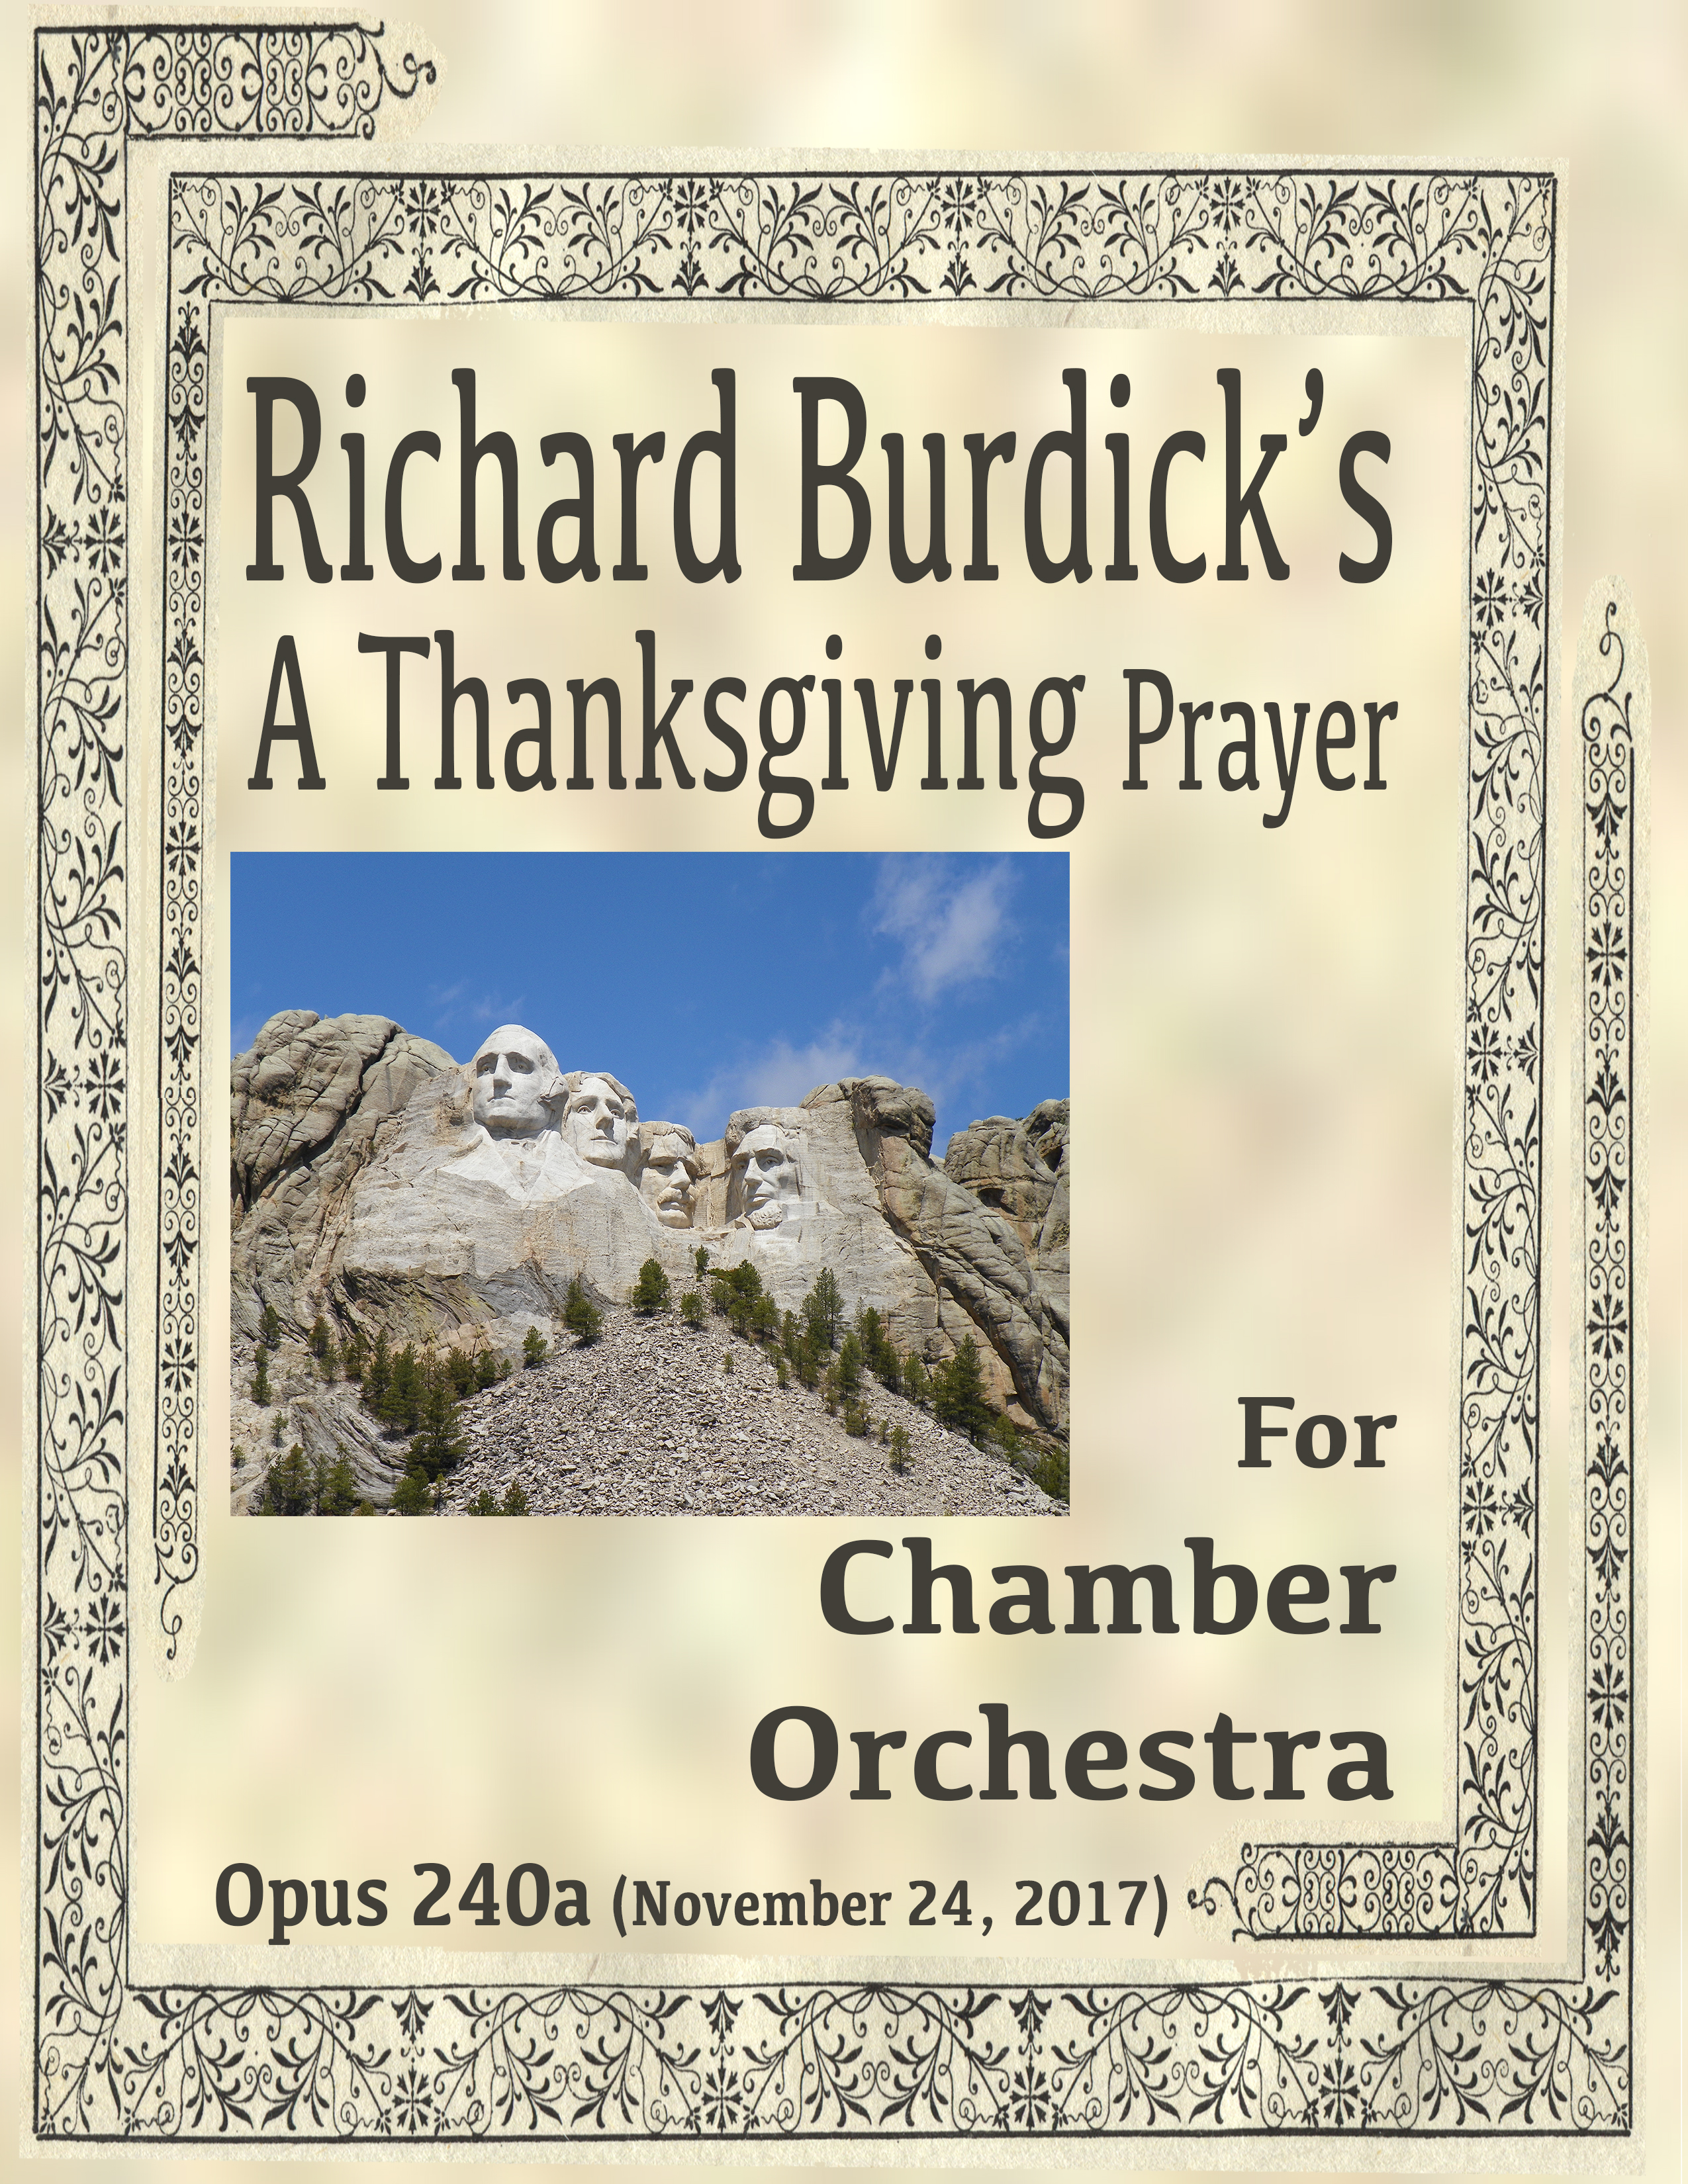 Burdick's Op. 240a cover